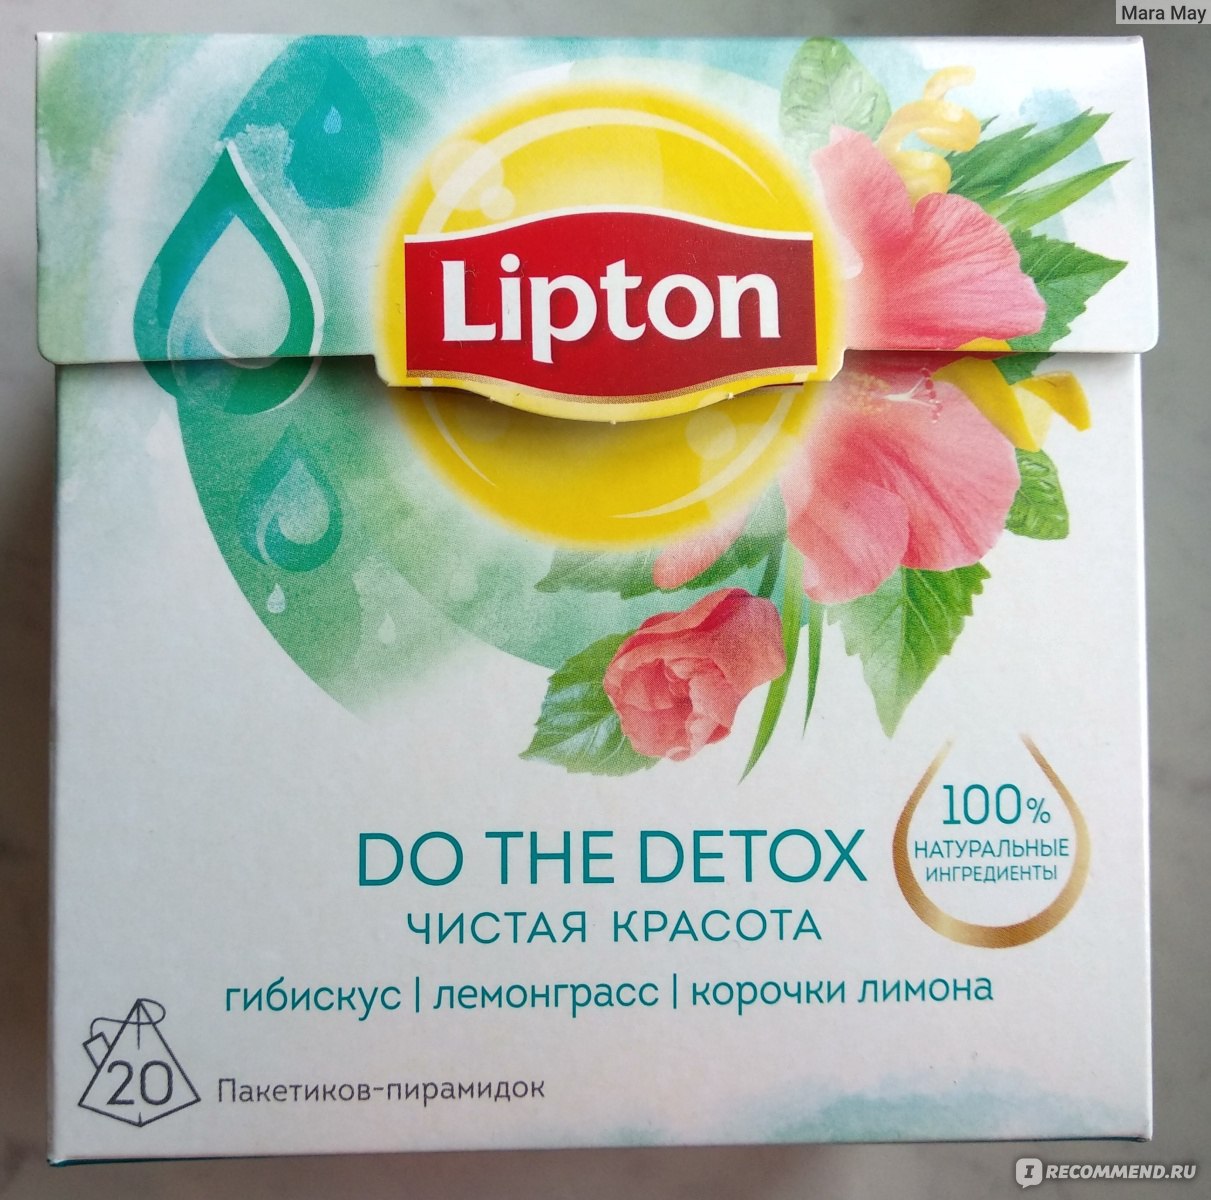 Липтон дома. Липтон Detox. Липтон детокс чай. Липтон необычные вкусы. Липтон в пакетиках новый.